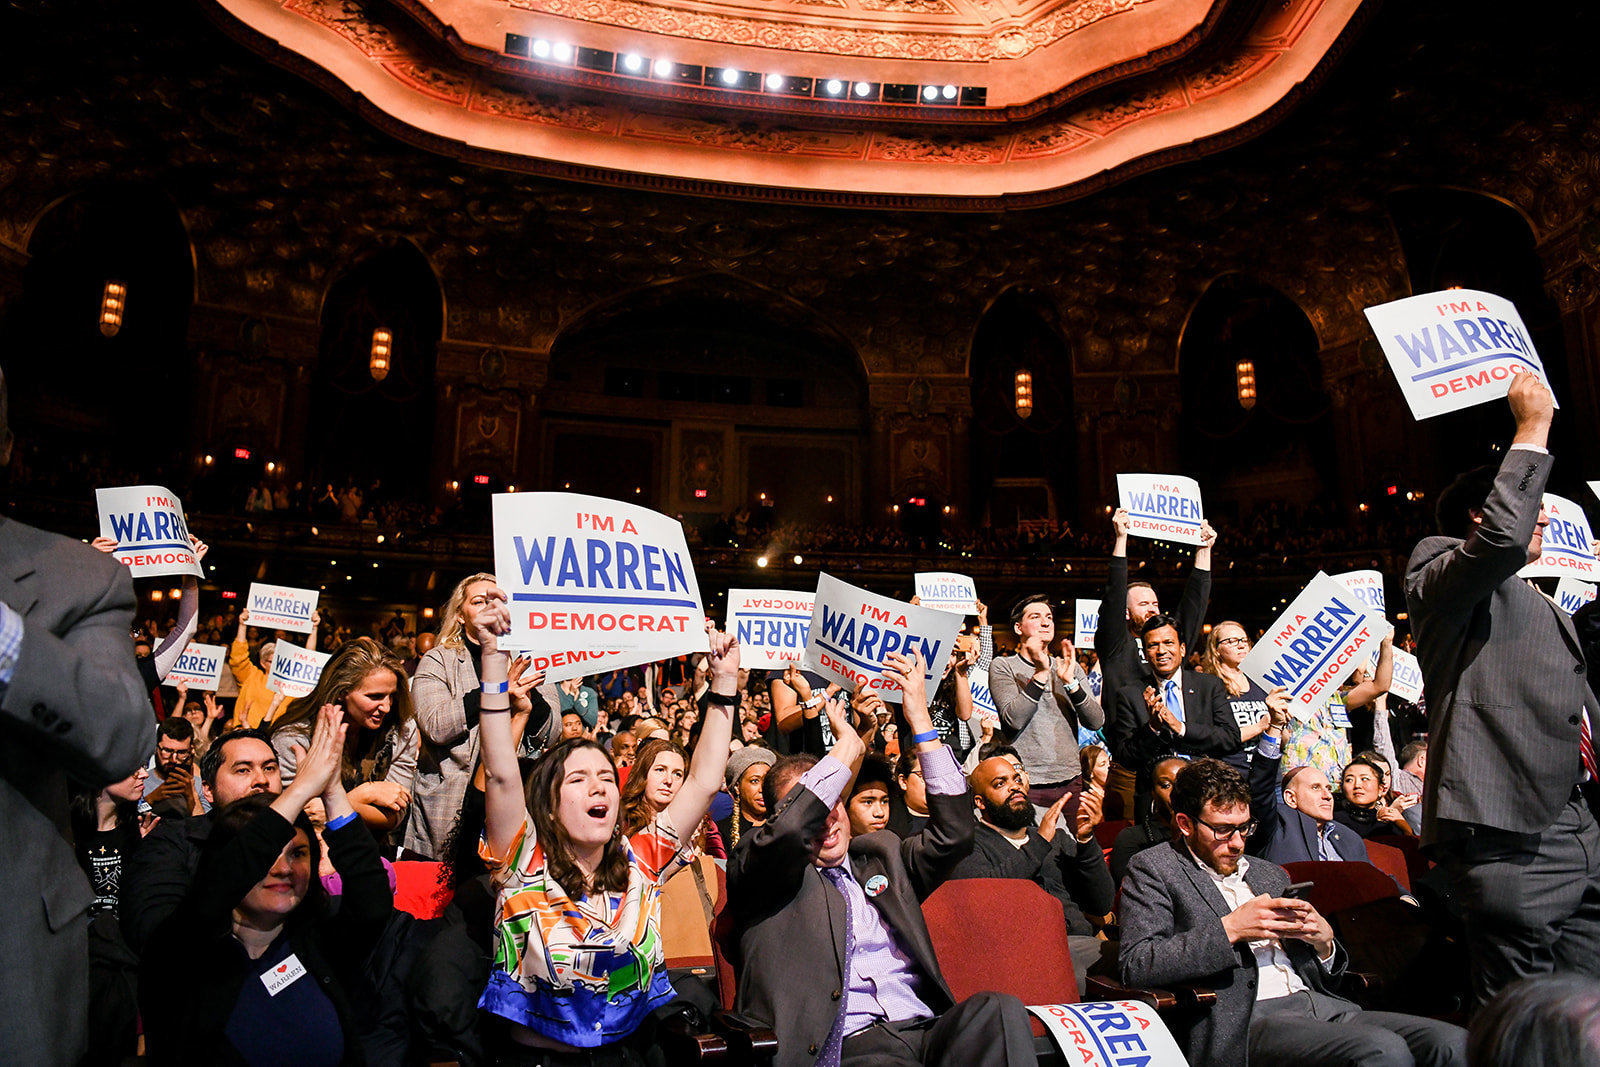 Crowd of supporters cheering for Elizabeth Warren